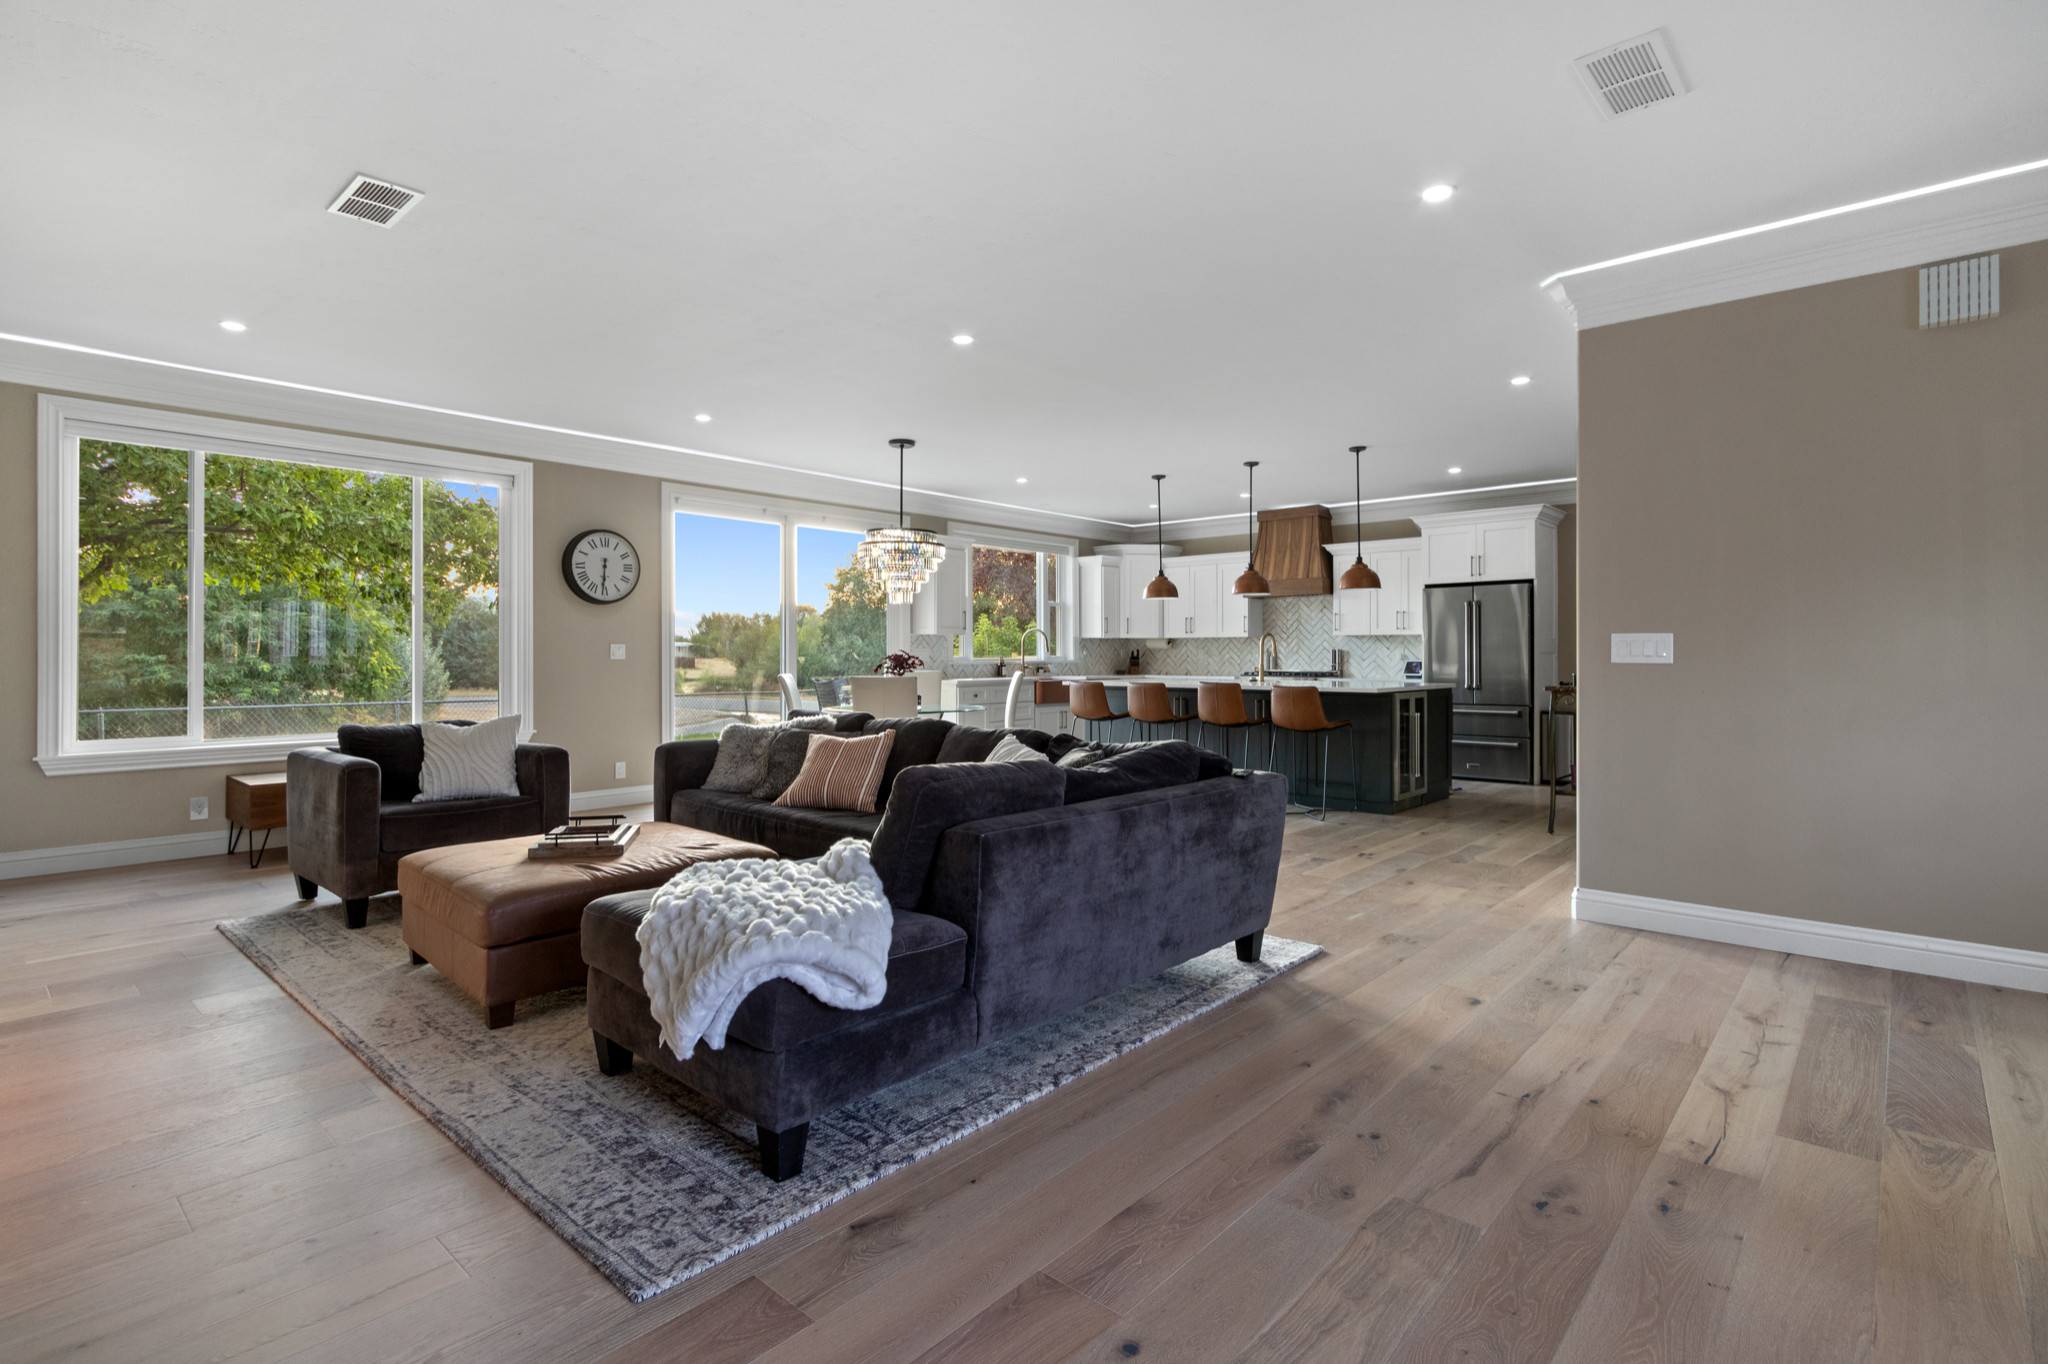 Boise | Transitional Full Home Remodel